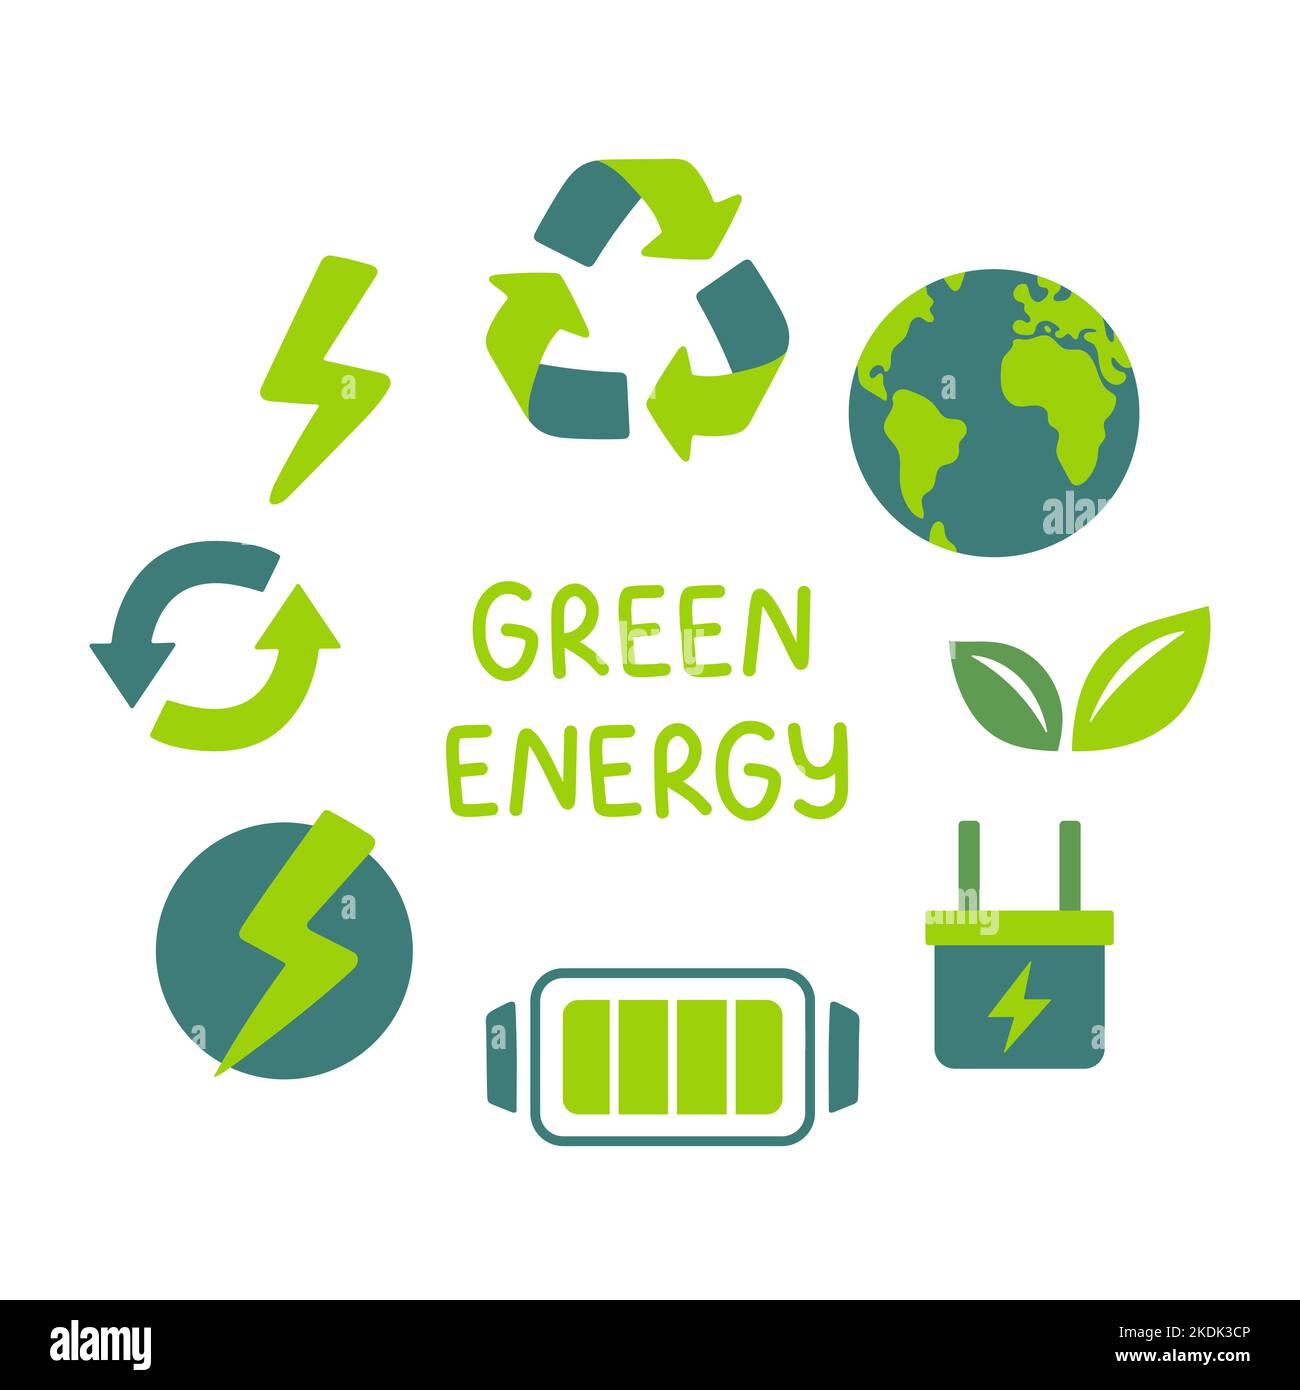 Symbole für das Konzept der grünen Energie. Ökologischer und umweltbezogener Farbsymbole. Erneuerbare Energie Vektor-Zeichenkollektion. Stock Vektor